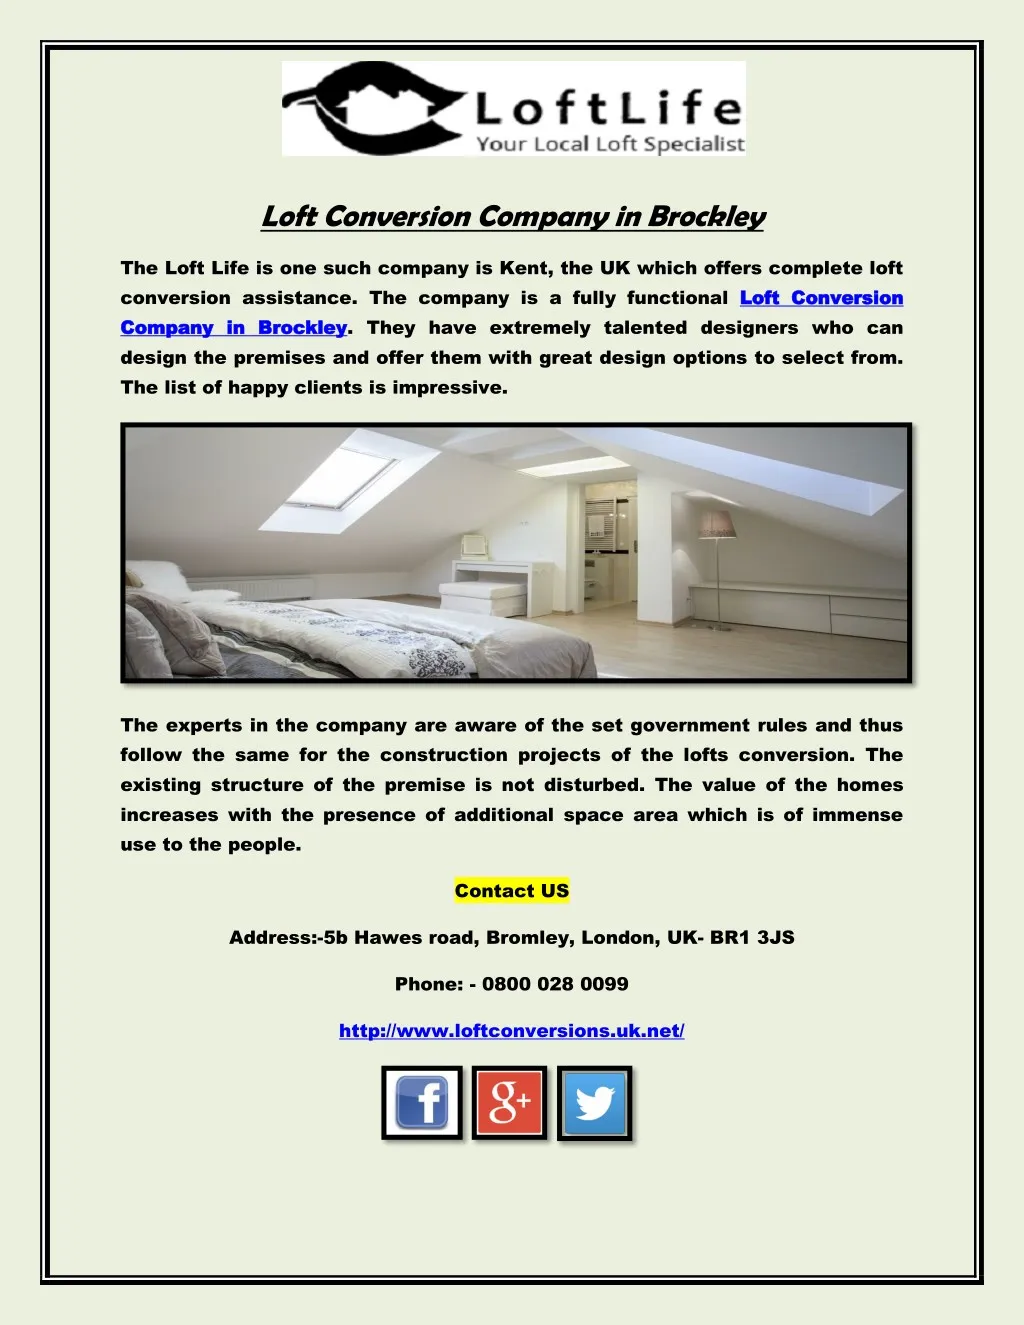 loft conversion company in brockley